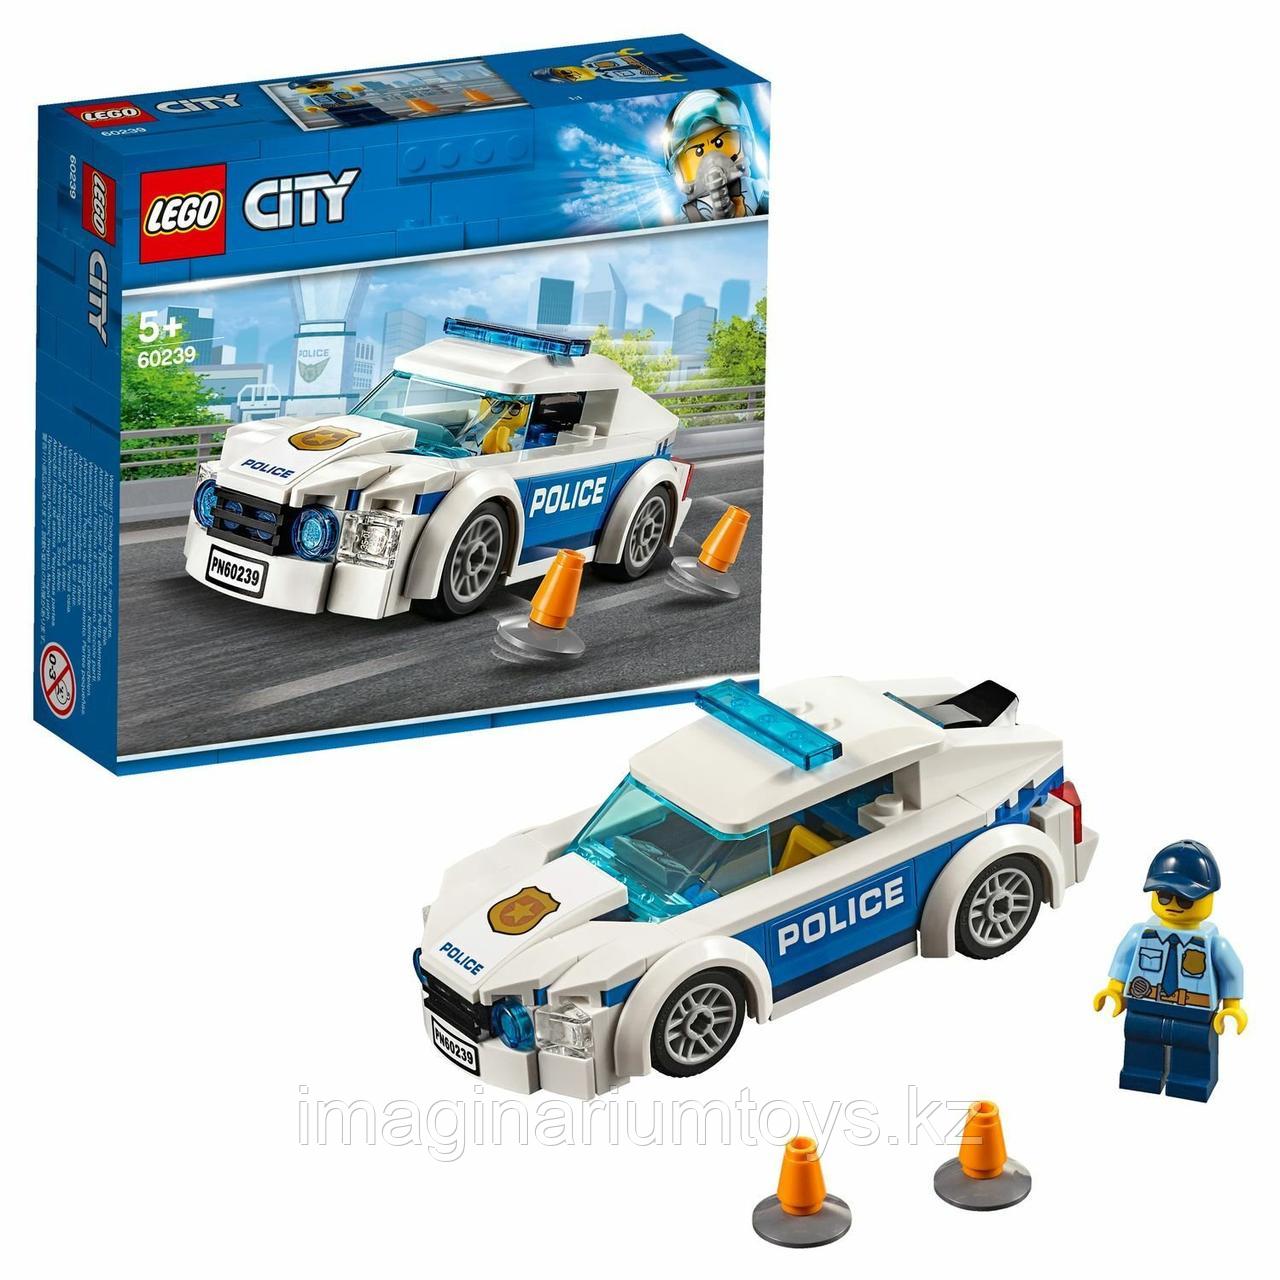 Конструктор LEGO City Лего Город Полицейский автомобиль 60239, фото 1